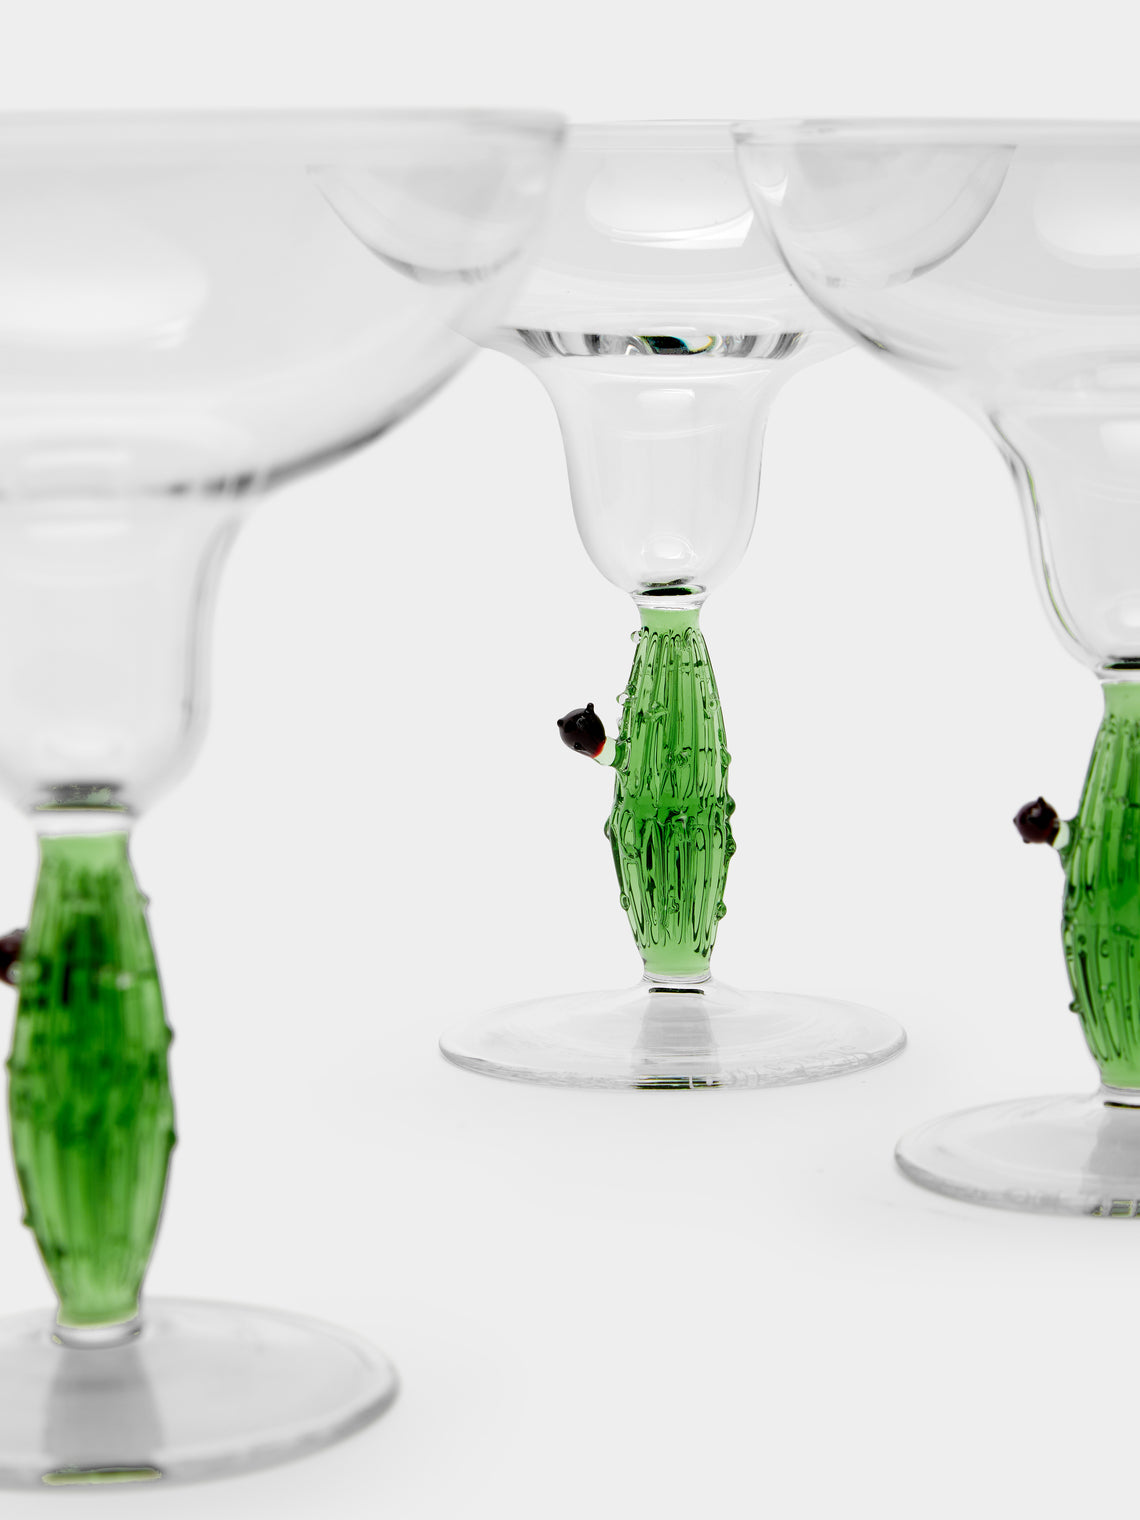 Casarialto - Cactus Hand-Blown Murano Glass Margarita Glasses (Set of 4) -  - ABASK